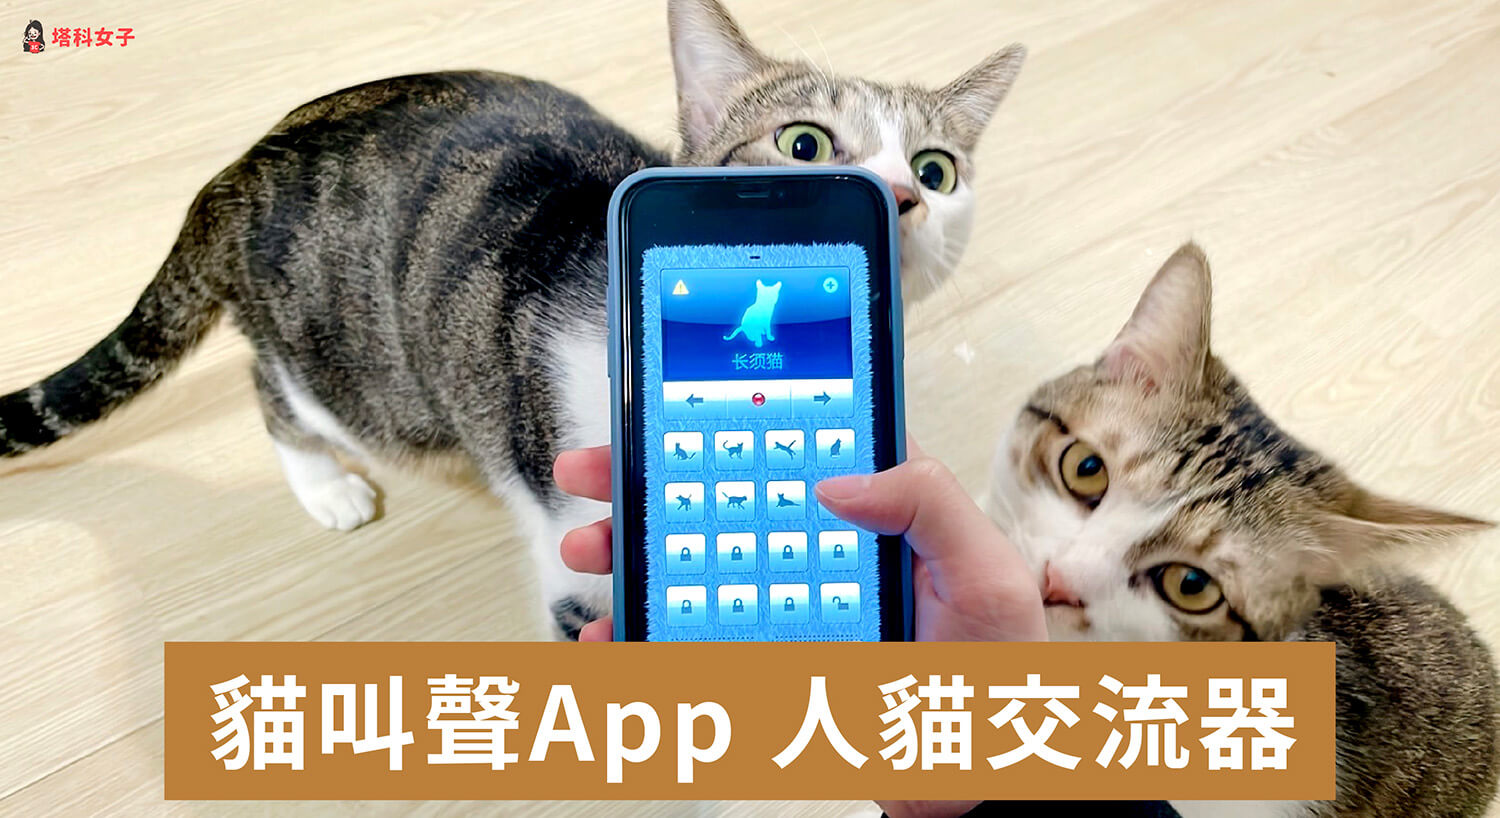 貓叫聲 App「人貓交流器」內建 96 種貓叫聲吸引貓咪注意 (效果實測)